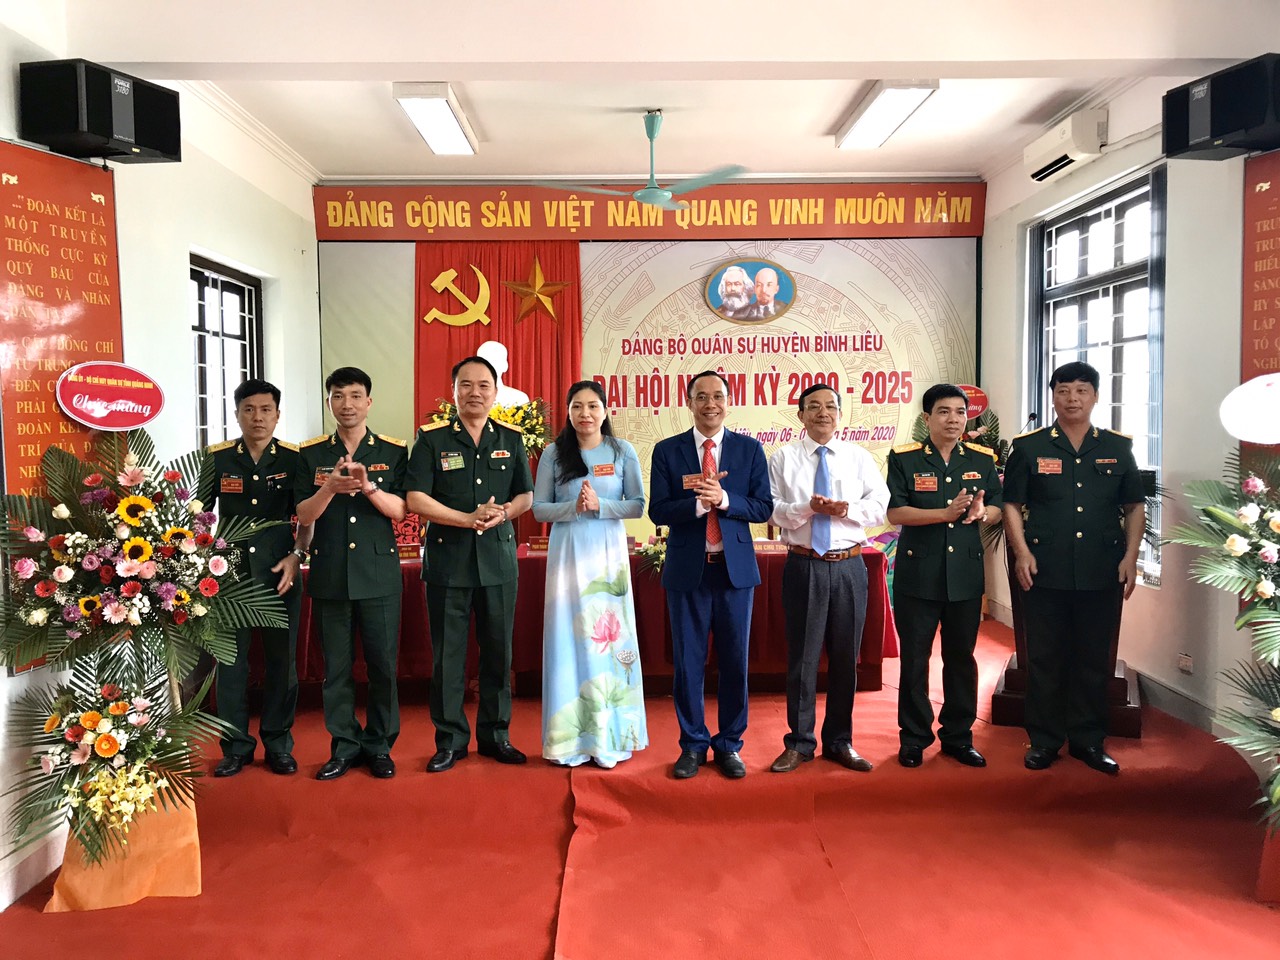 Lãnh đạo Bộ CHQS tỉnh, Huyện ủy Bình Liêu chúc mừng Ban Chấp hành Đảng bộ Quân sự huyện Bình Liêu nhiệm kỳ 2020-2025.